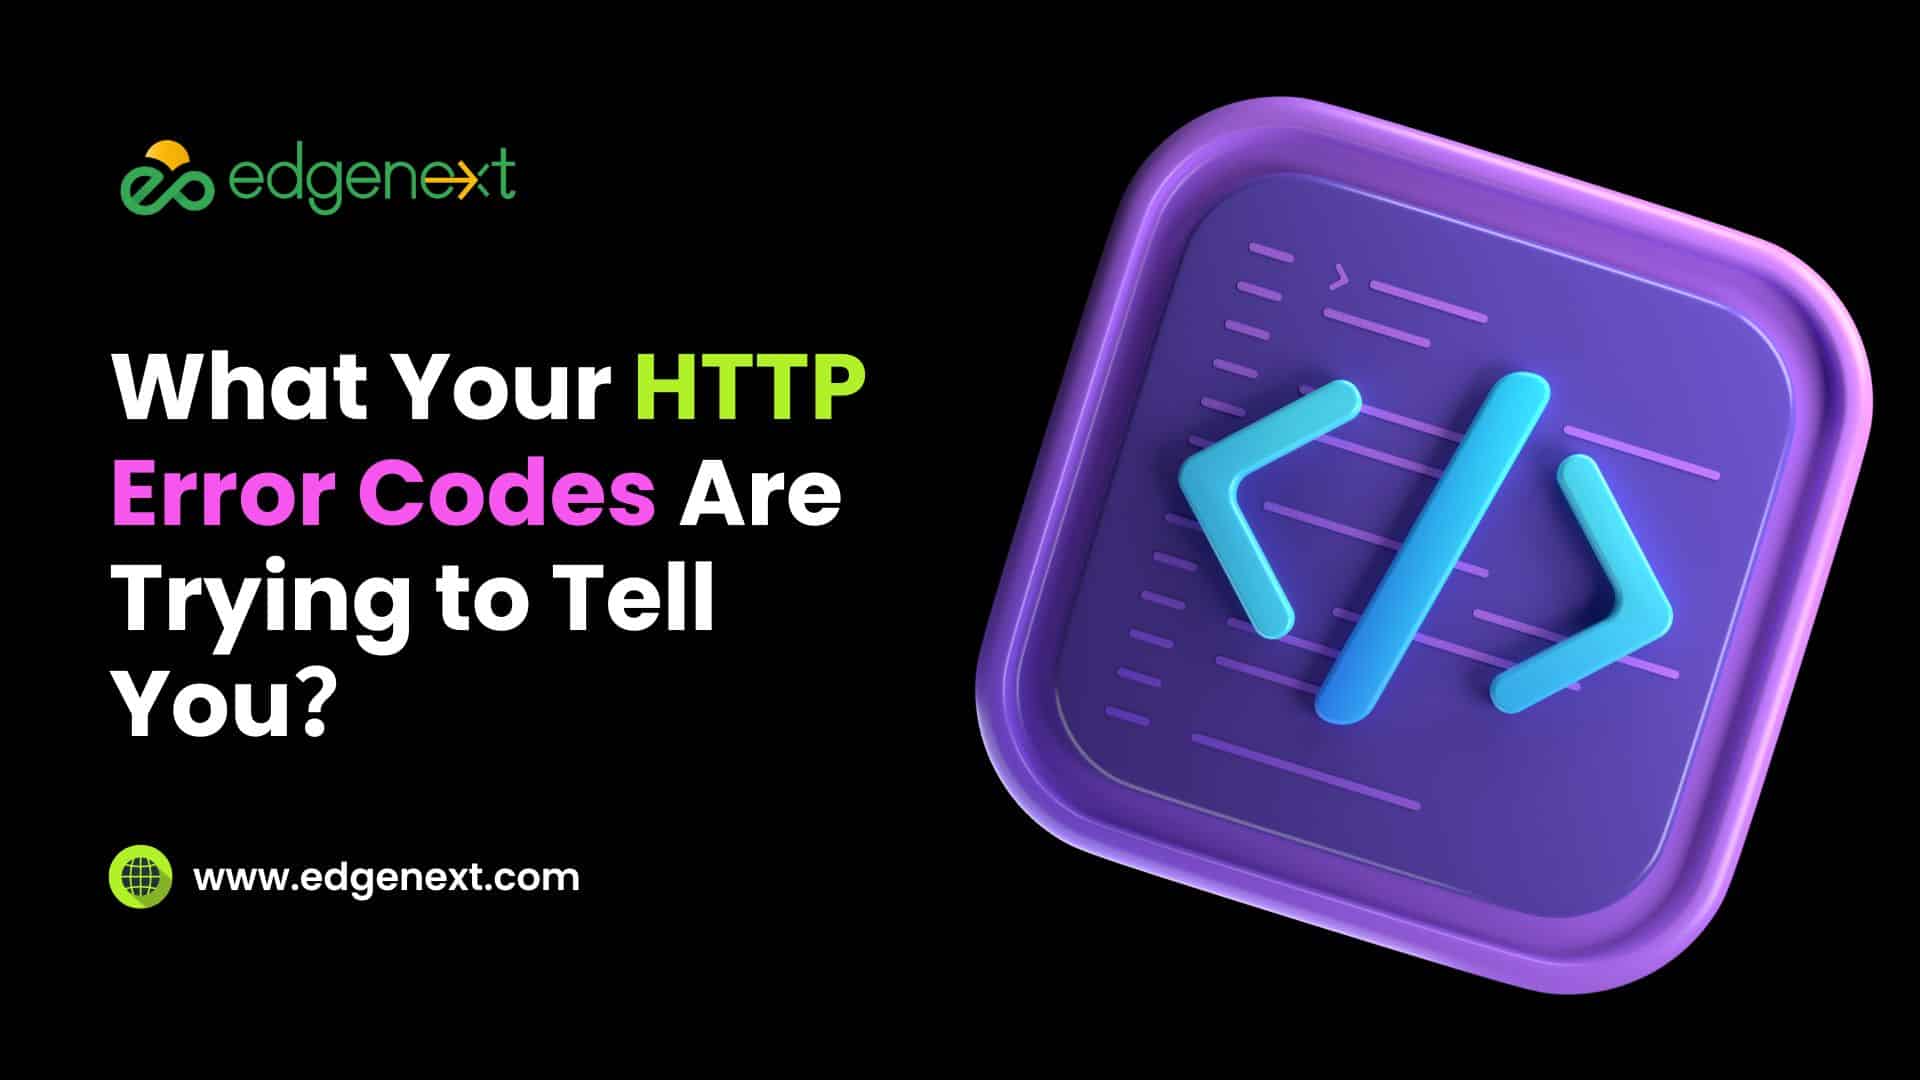 HTTP Error Codes